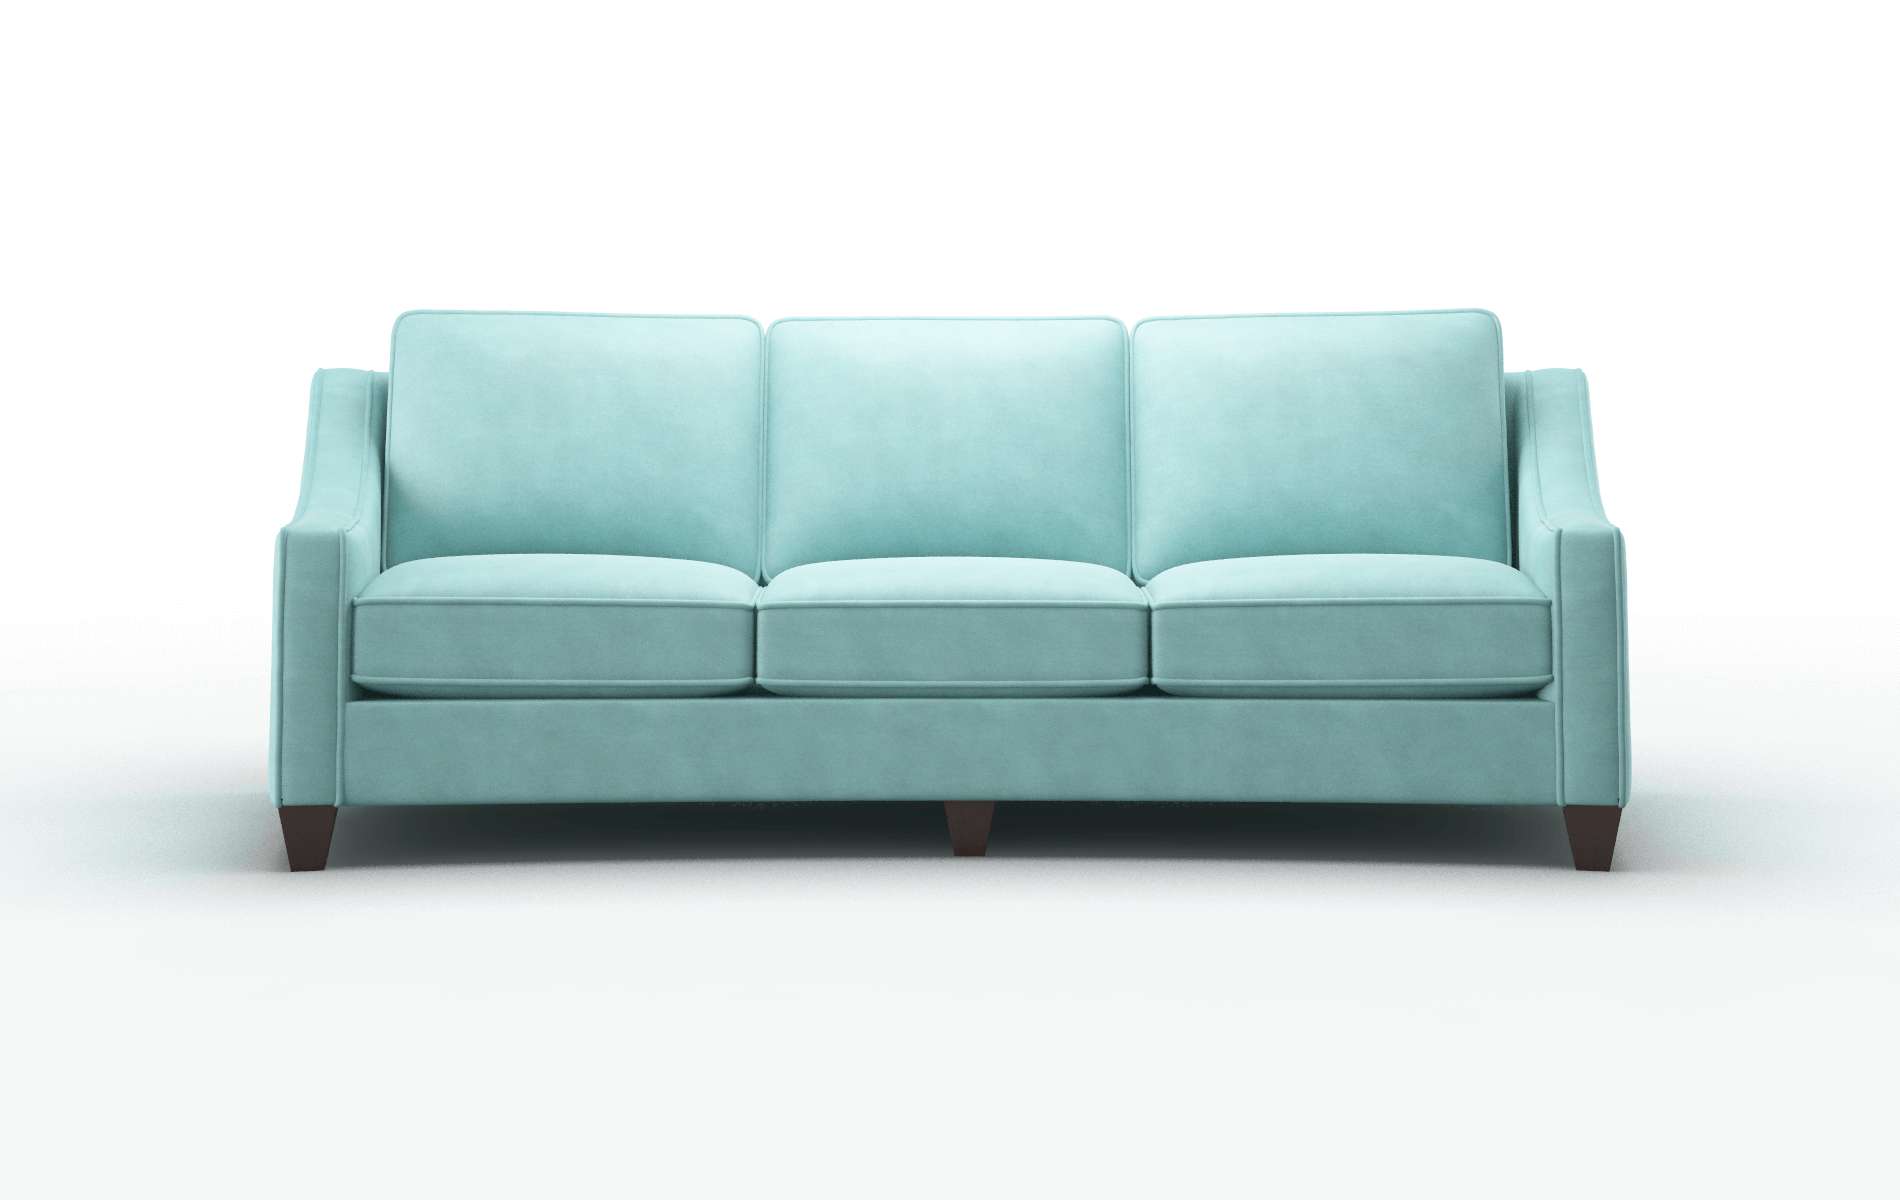 Sanda Curious Turquoise Sofa espresso legs